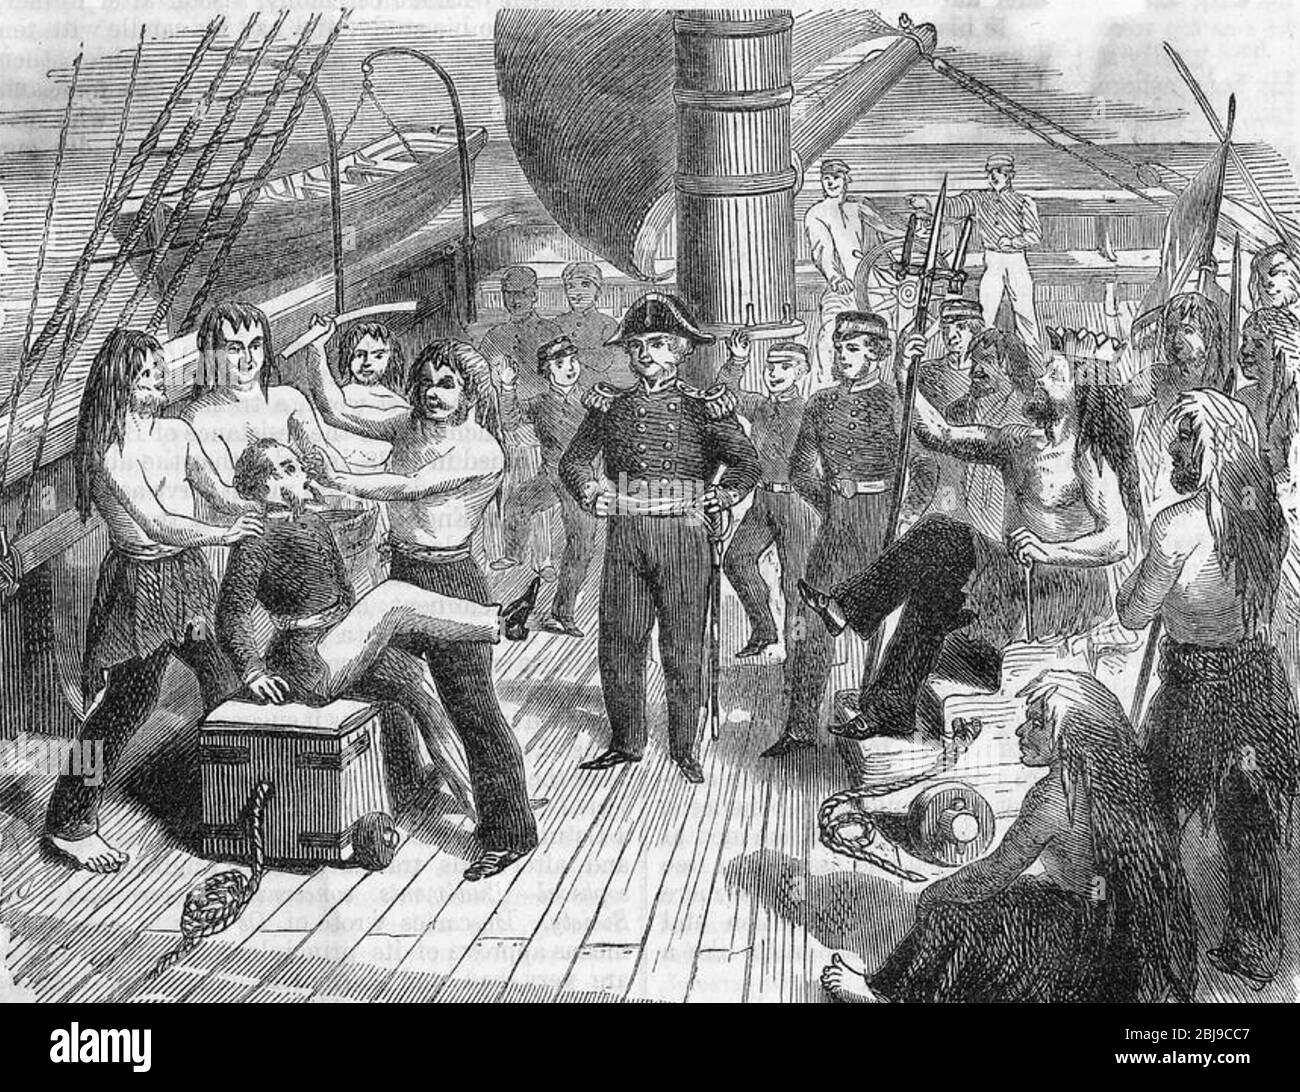 CRUZANDO la ceremonia ECUATORIAL en la década de 1840 Foto de stock